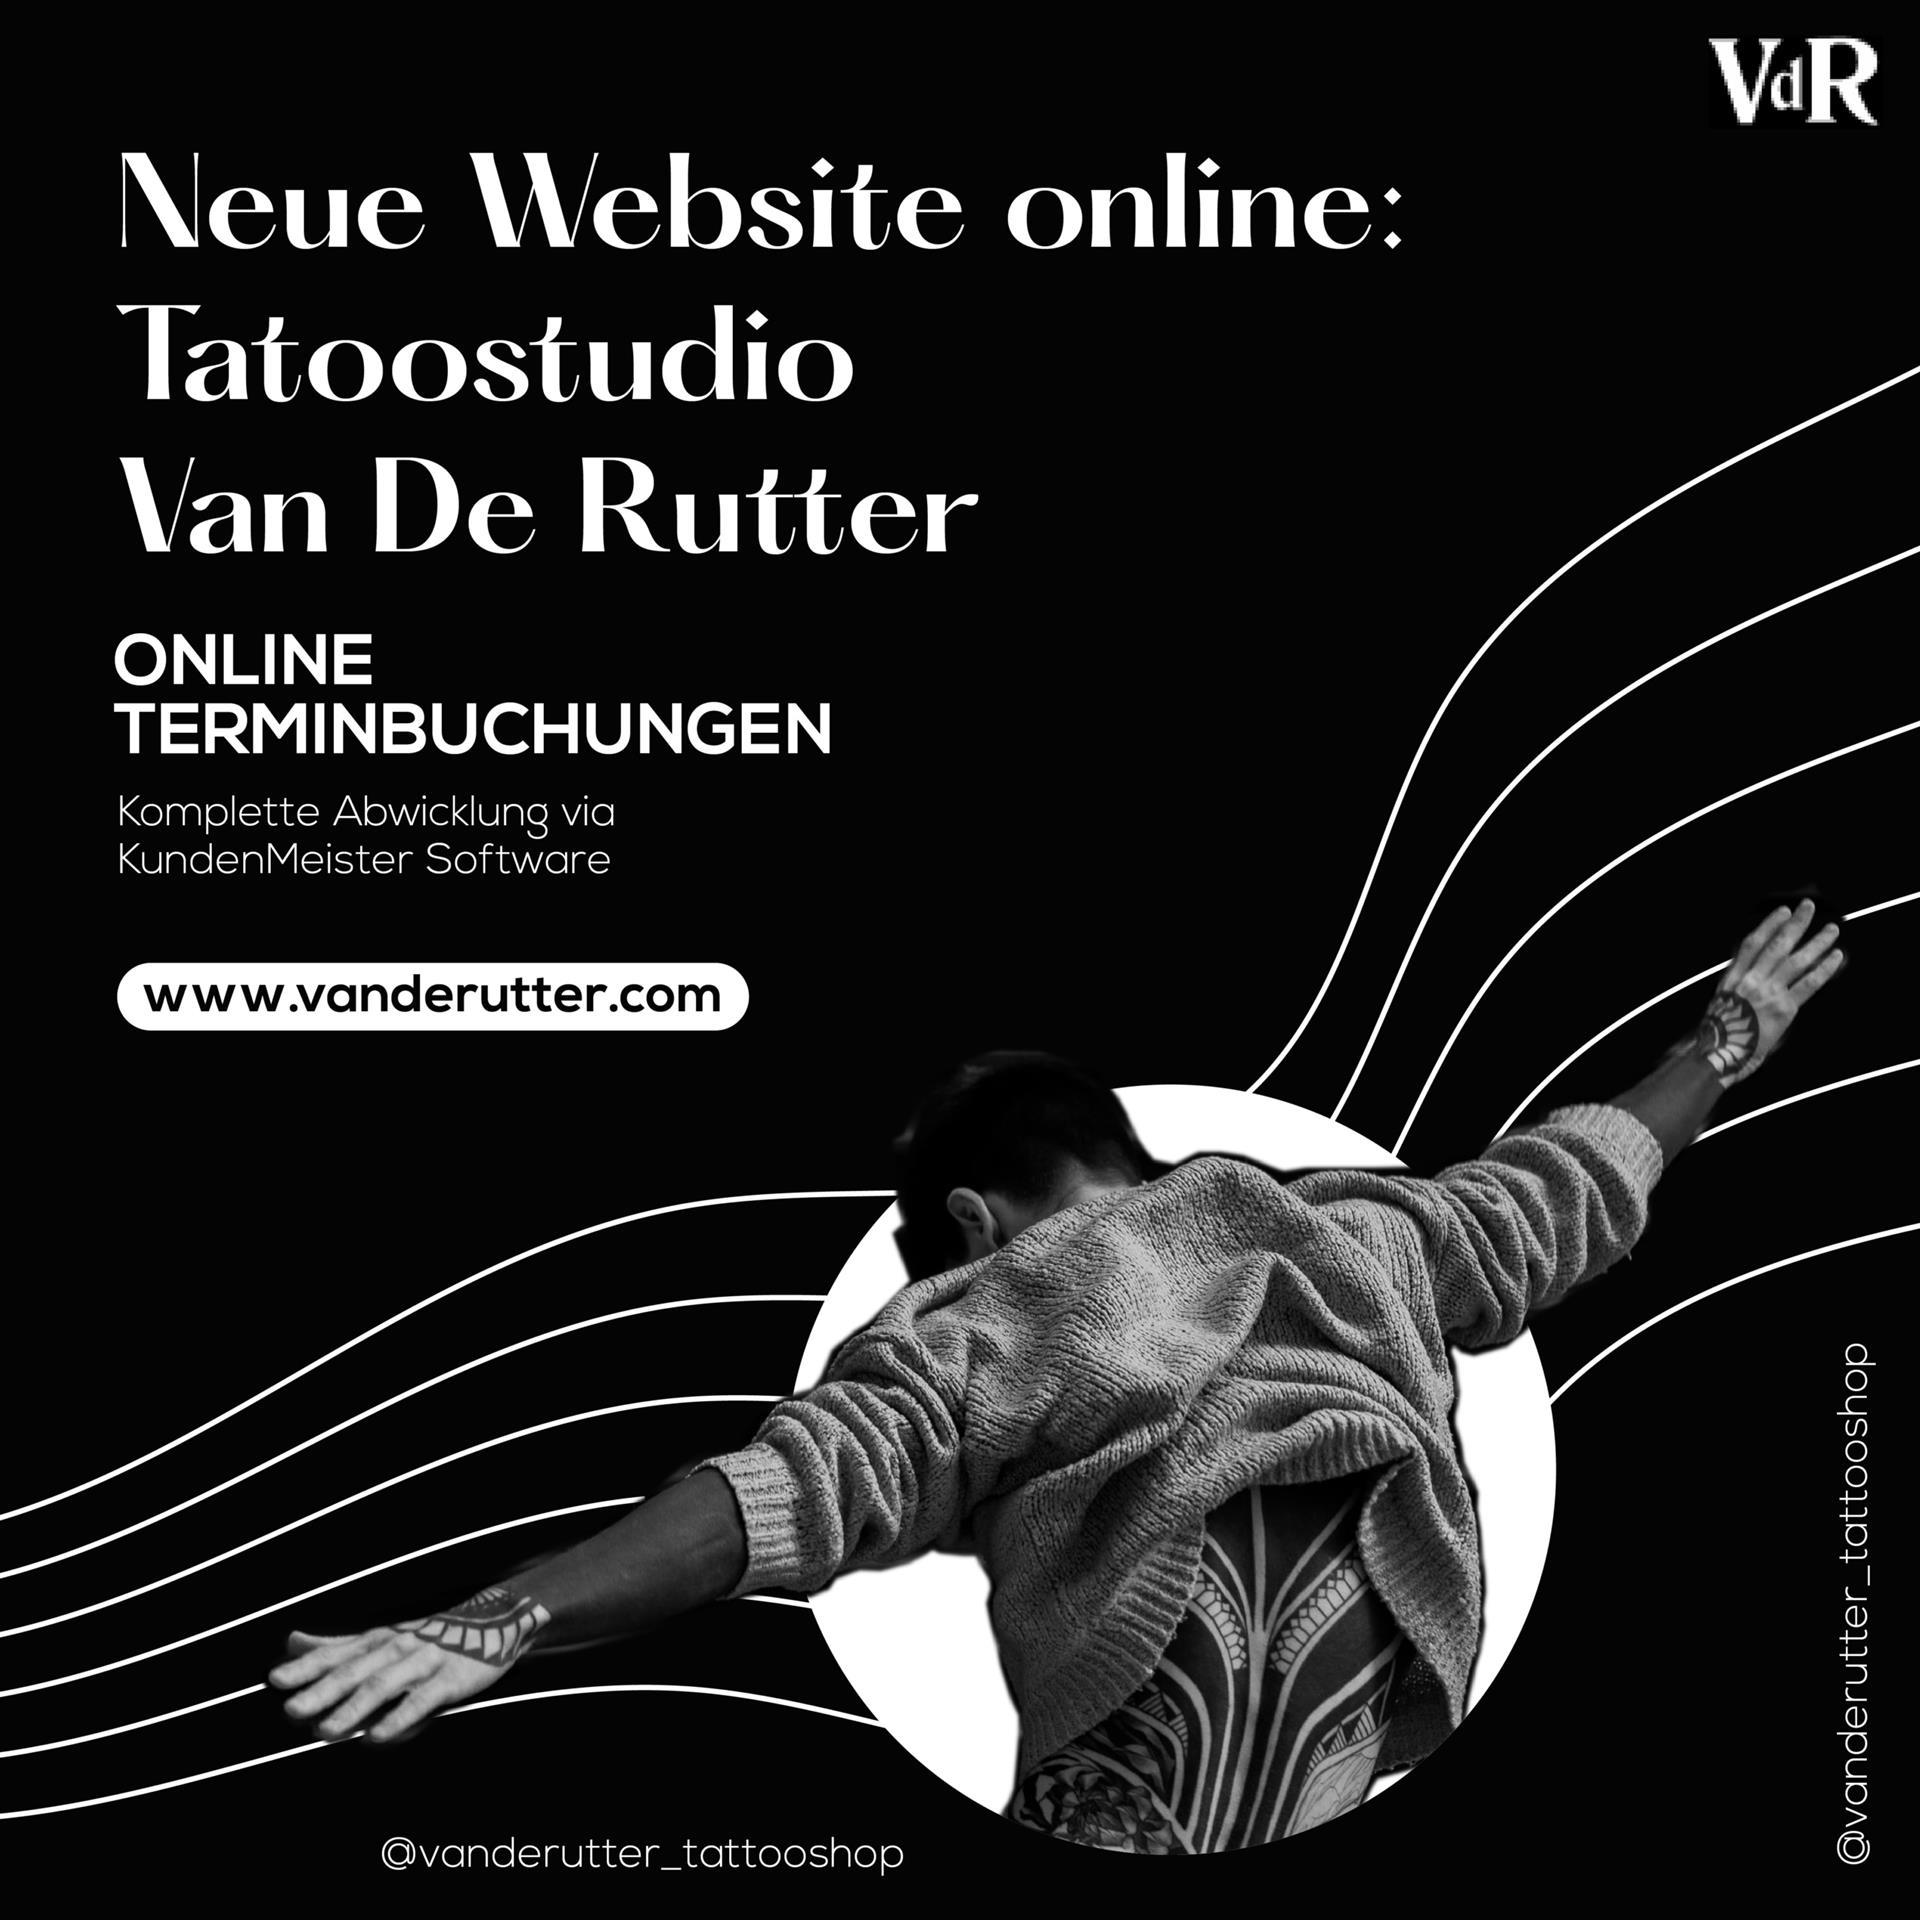 Нова веб локација за Ван де Рутера